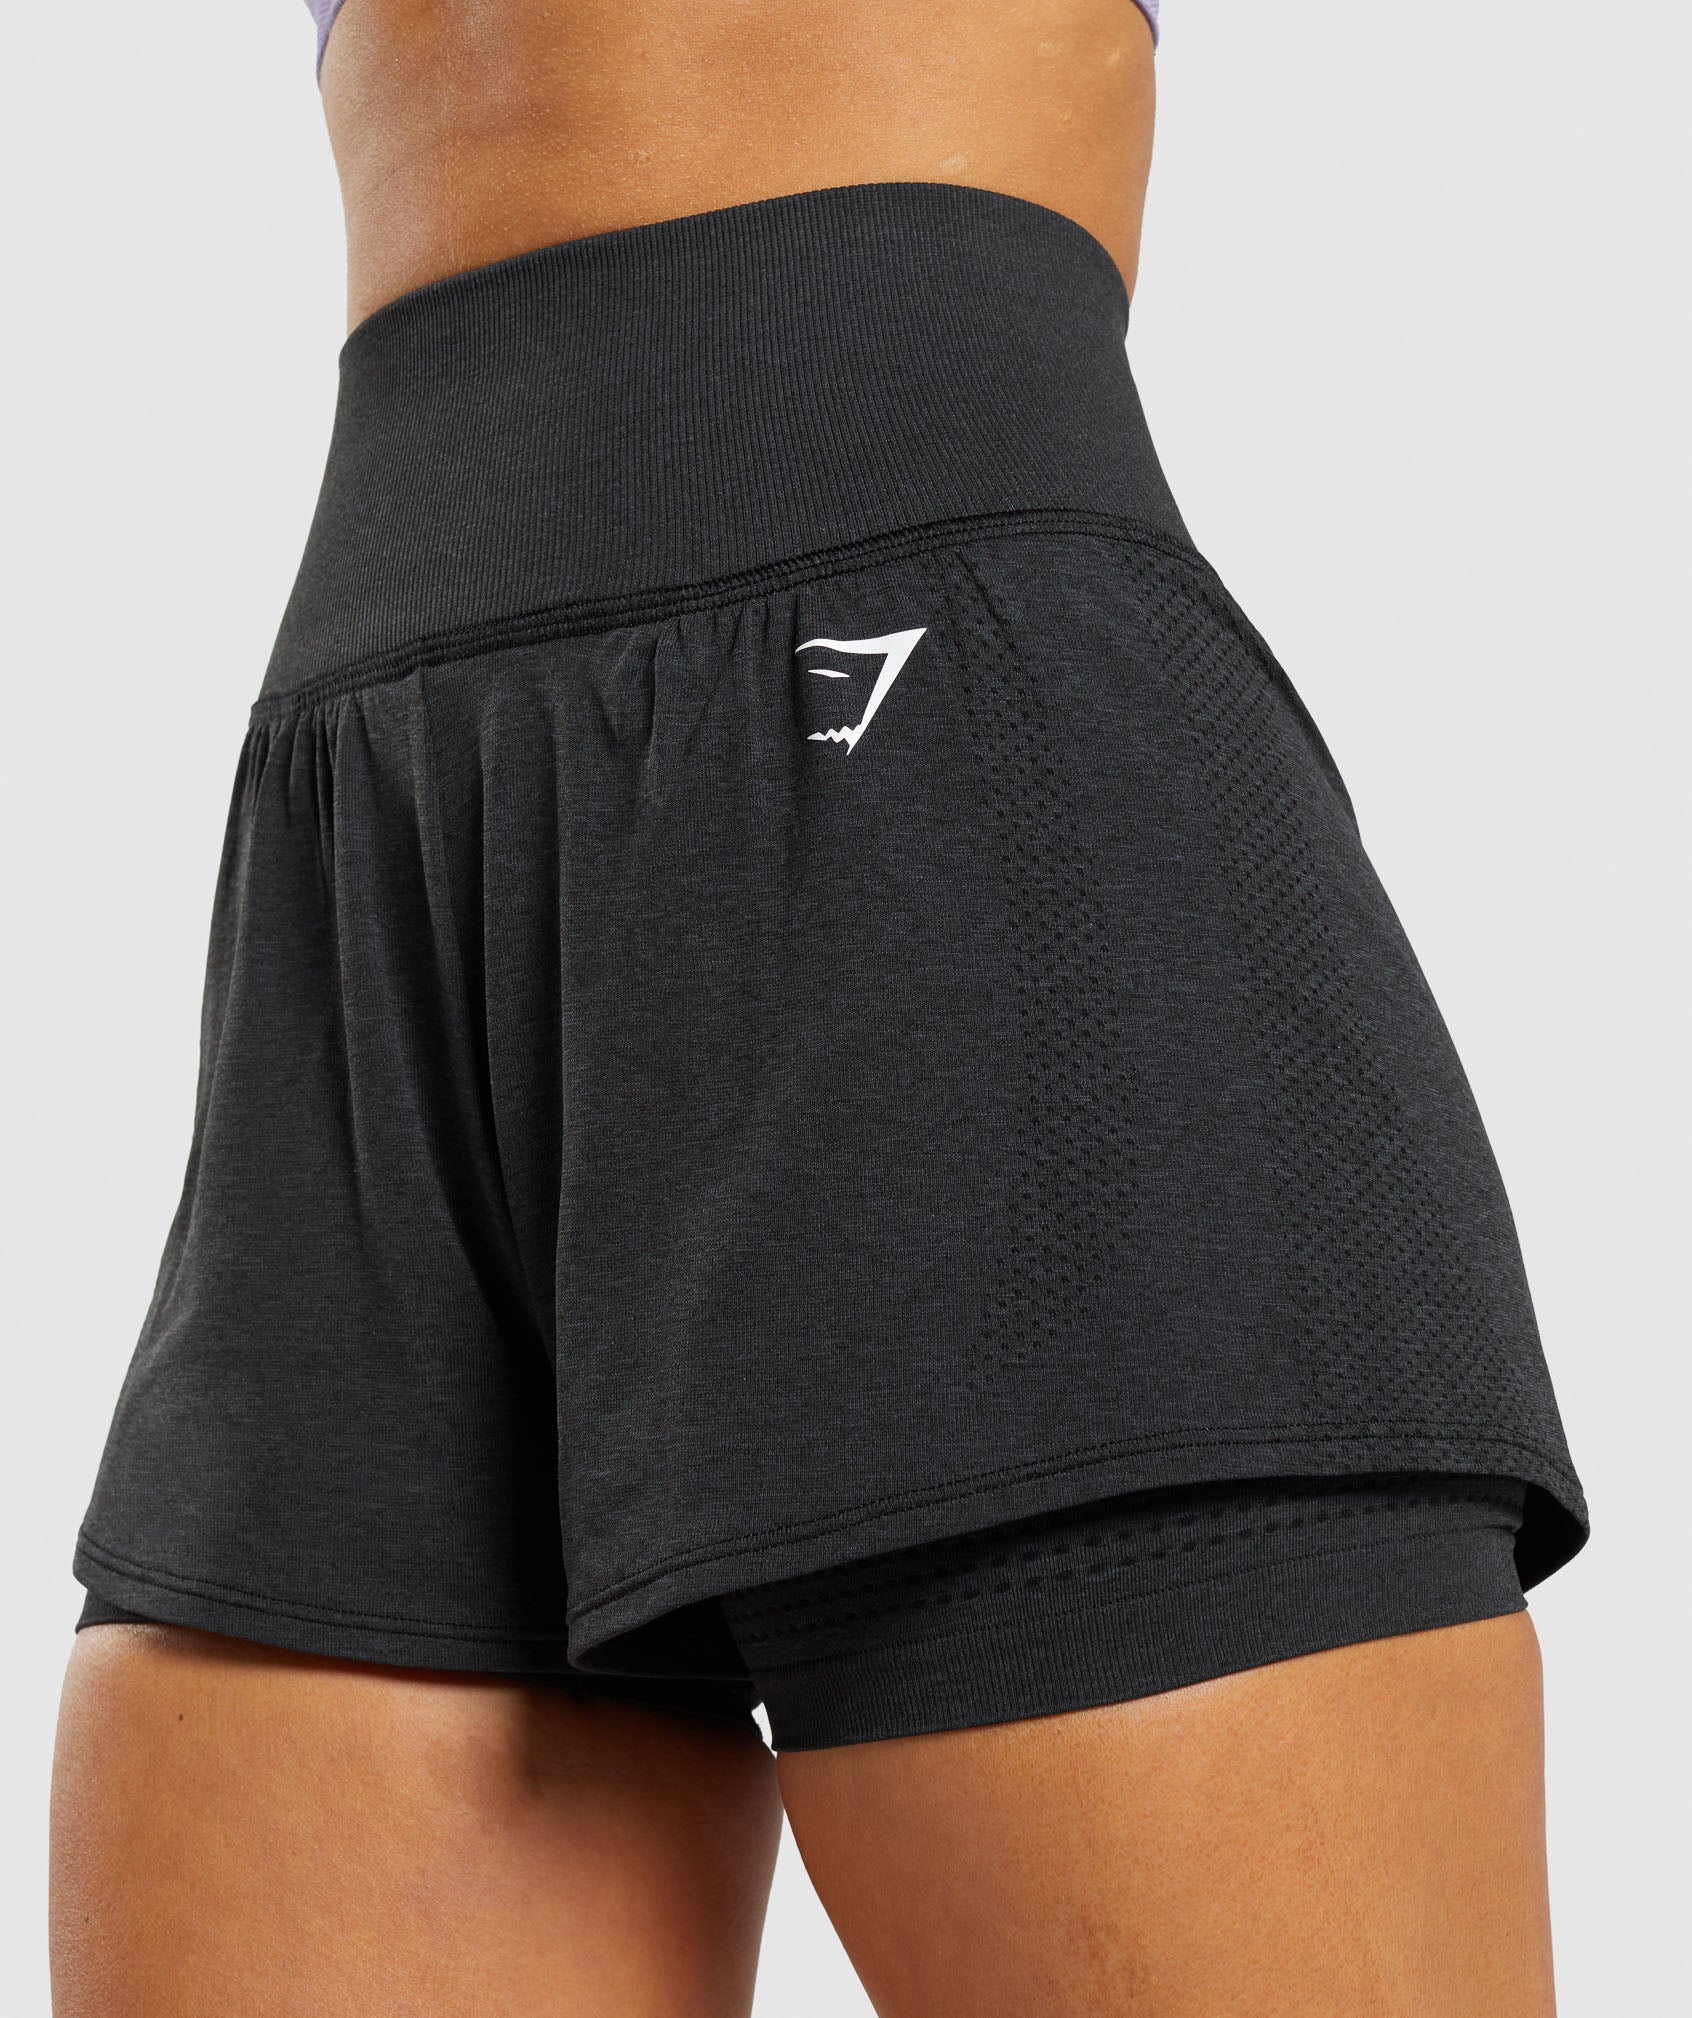 Vital Seamless 2.0 2-in-1 Shorts in Black Marl